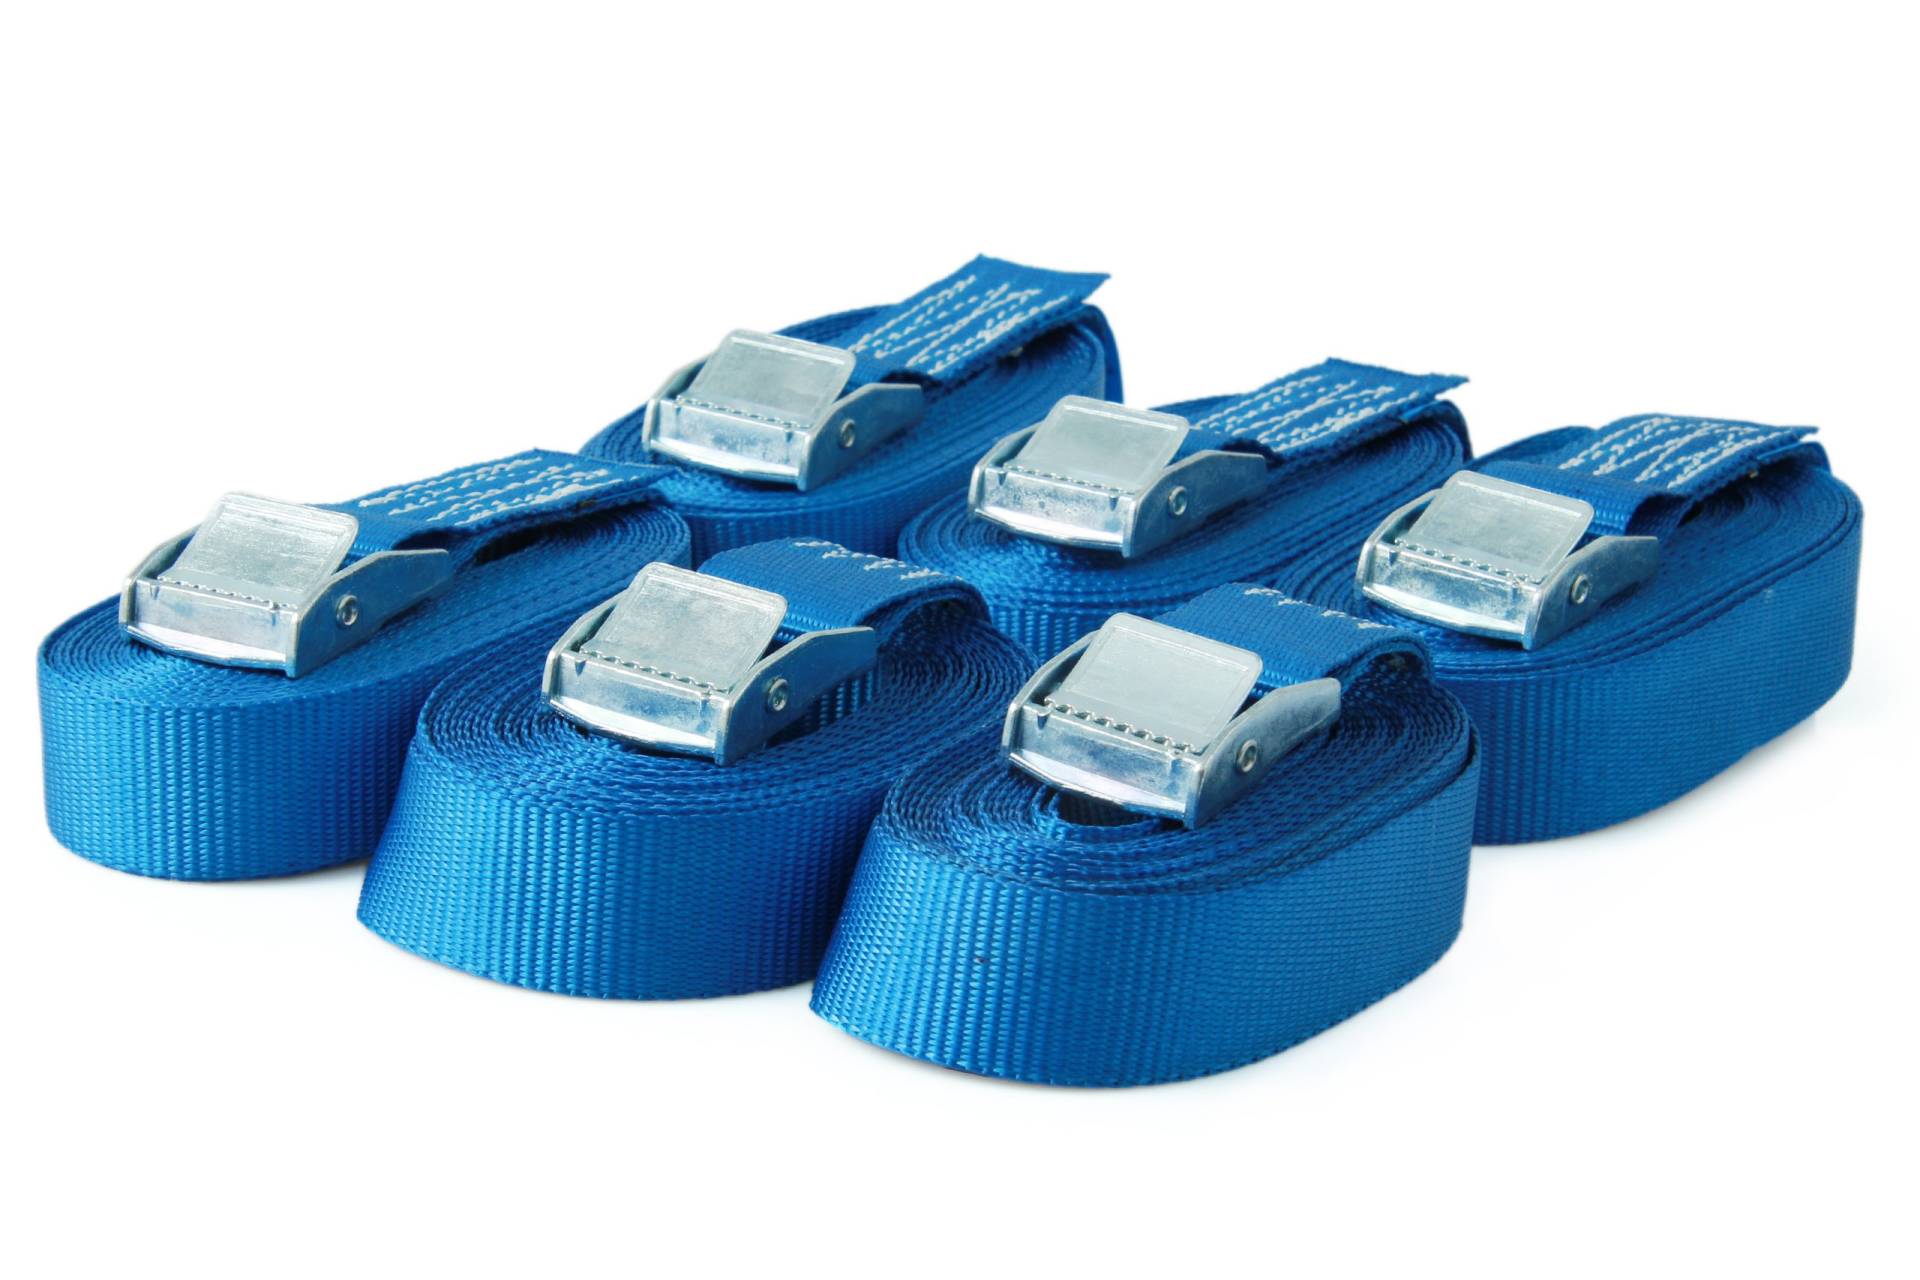 Sandax 6er-Set Spanngurte mit Klemmschloss, Länge 6m, Breite 25mm, Farbe blau, Zurrgurte mit Klemmverschluss, belastbar bis 250kg, nach DIN EN 12195-2, Einteilige hochwertige Klemmschlossgurte von Sandax